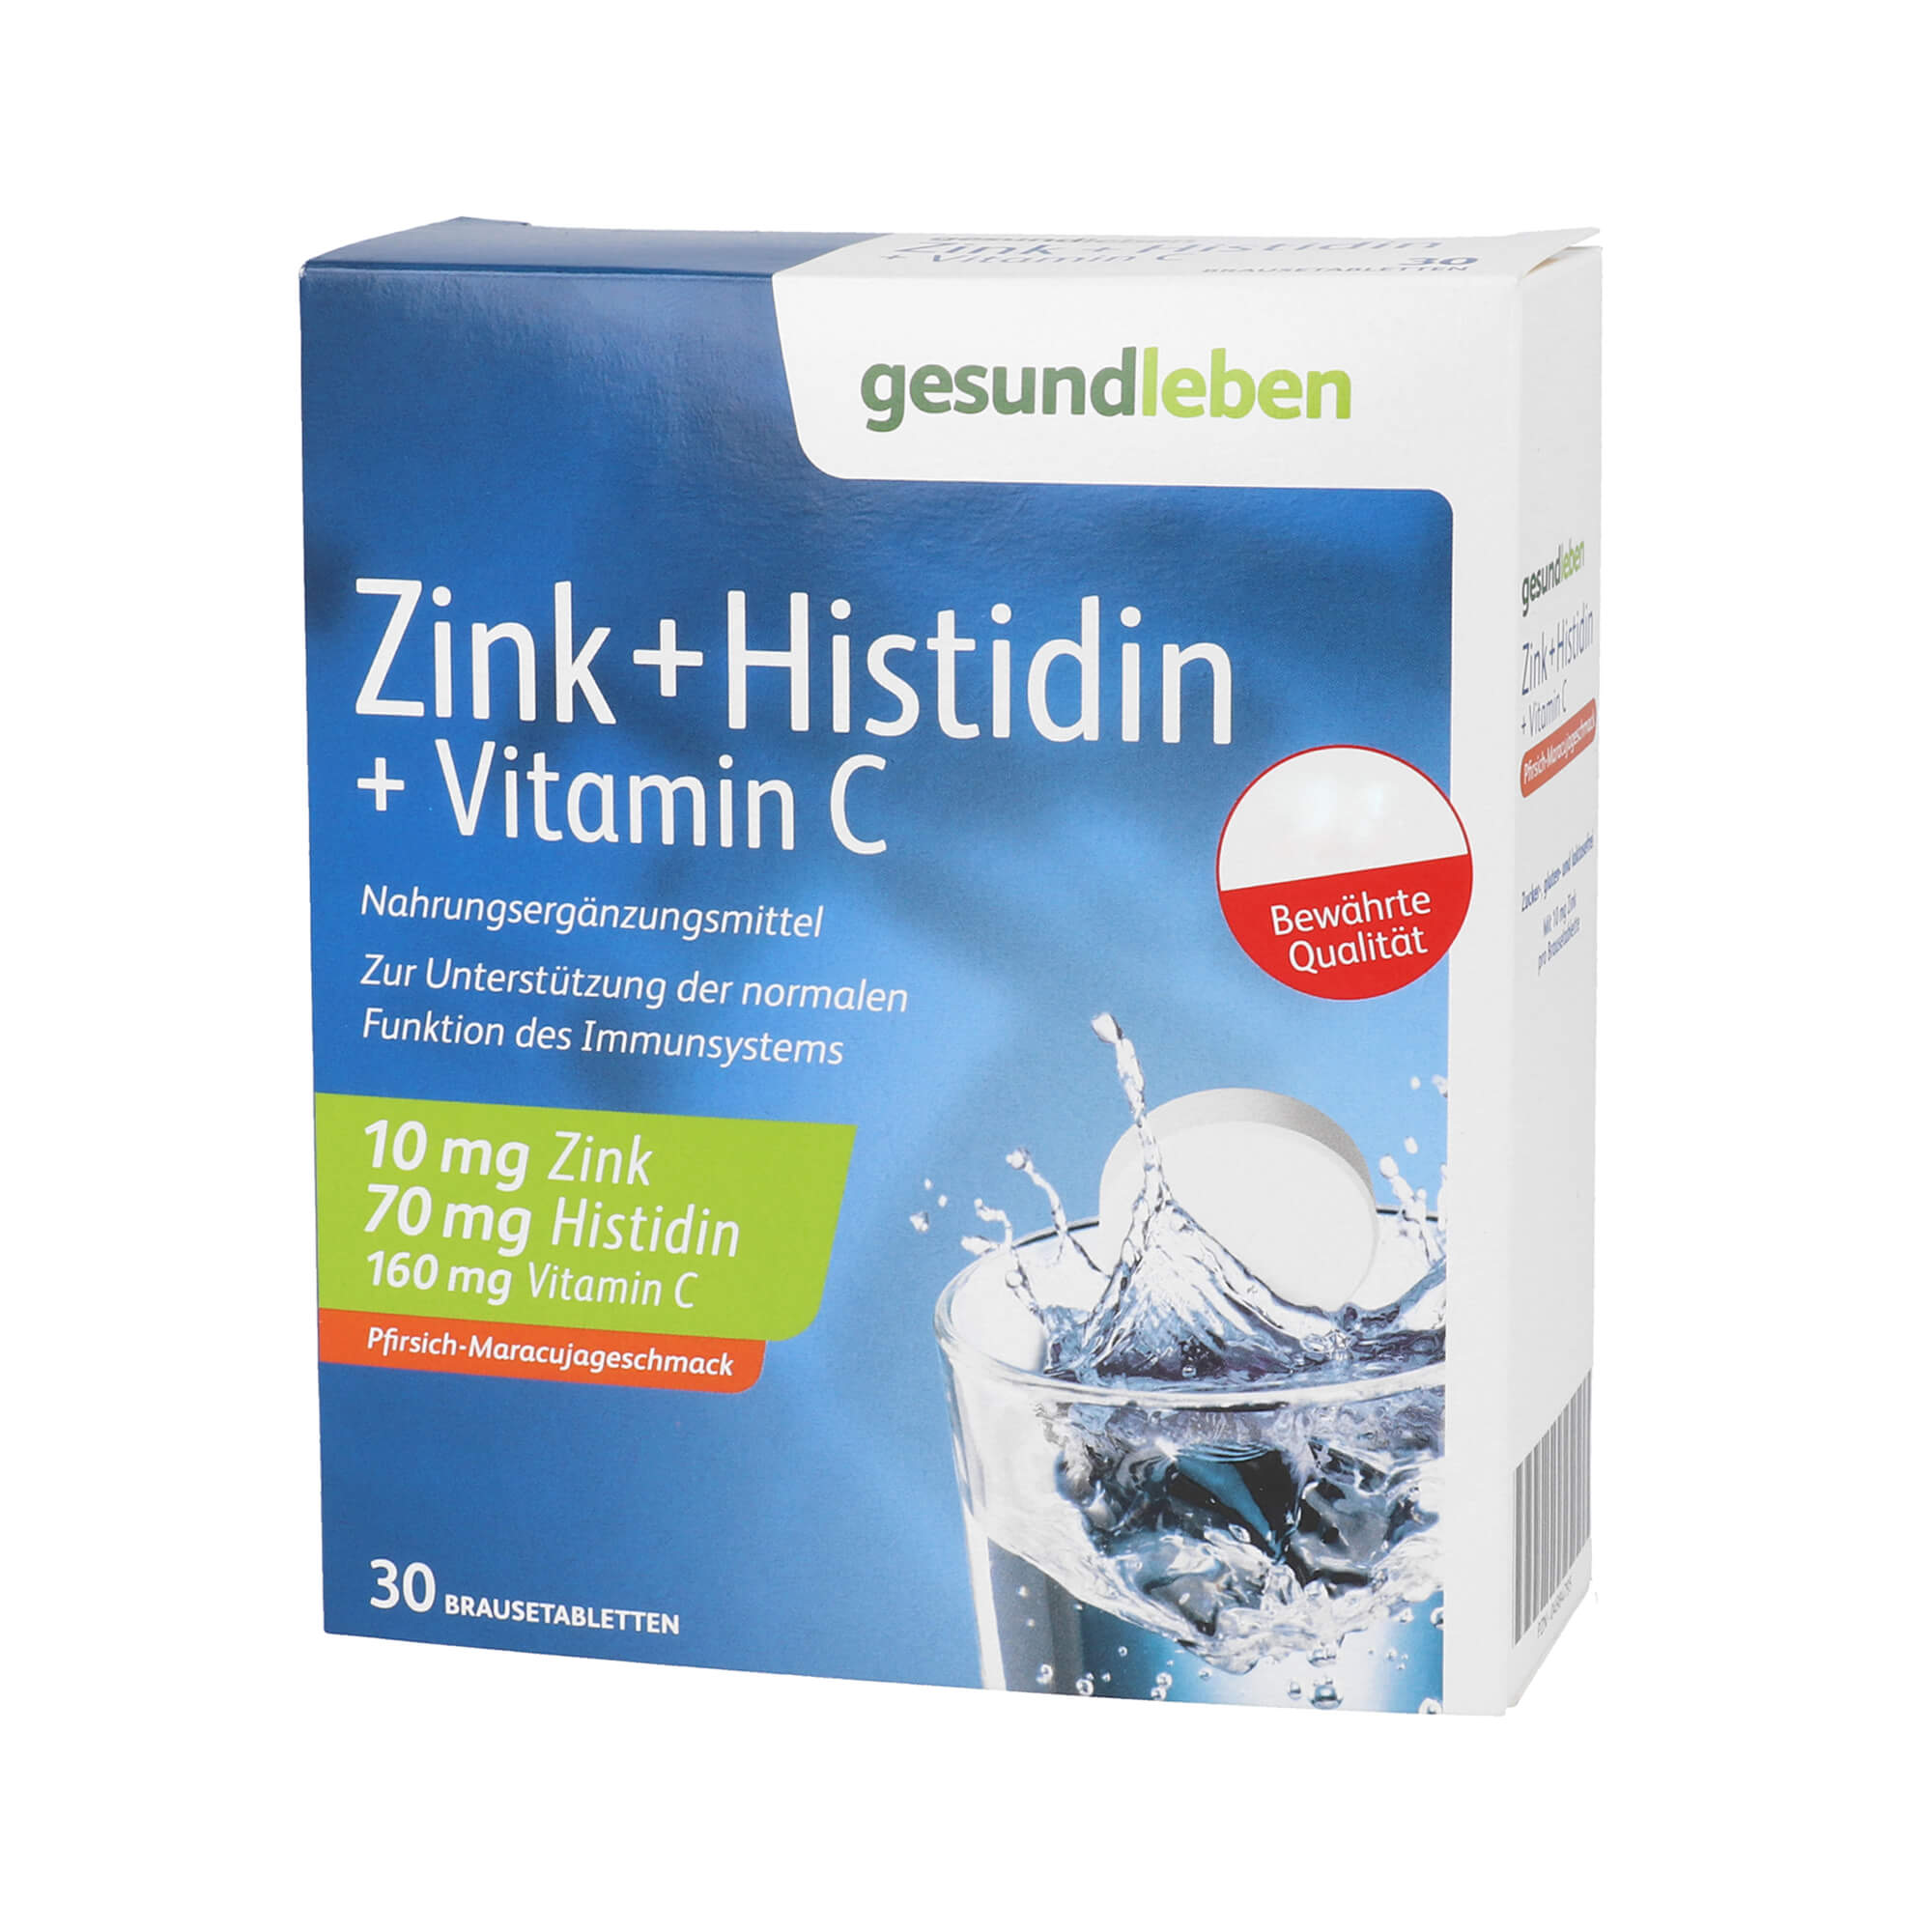 Nahrungsergänzungsmittel mit Zink + Histidin + Vitamin C. Mit Pfirsich-Maracujageschmack.